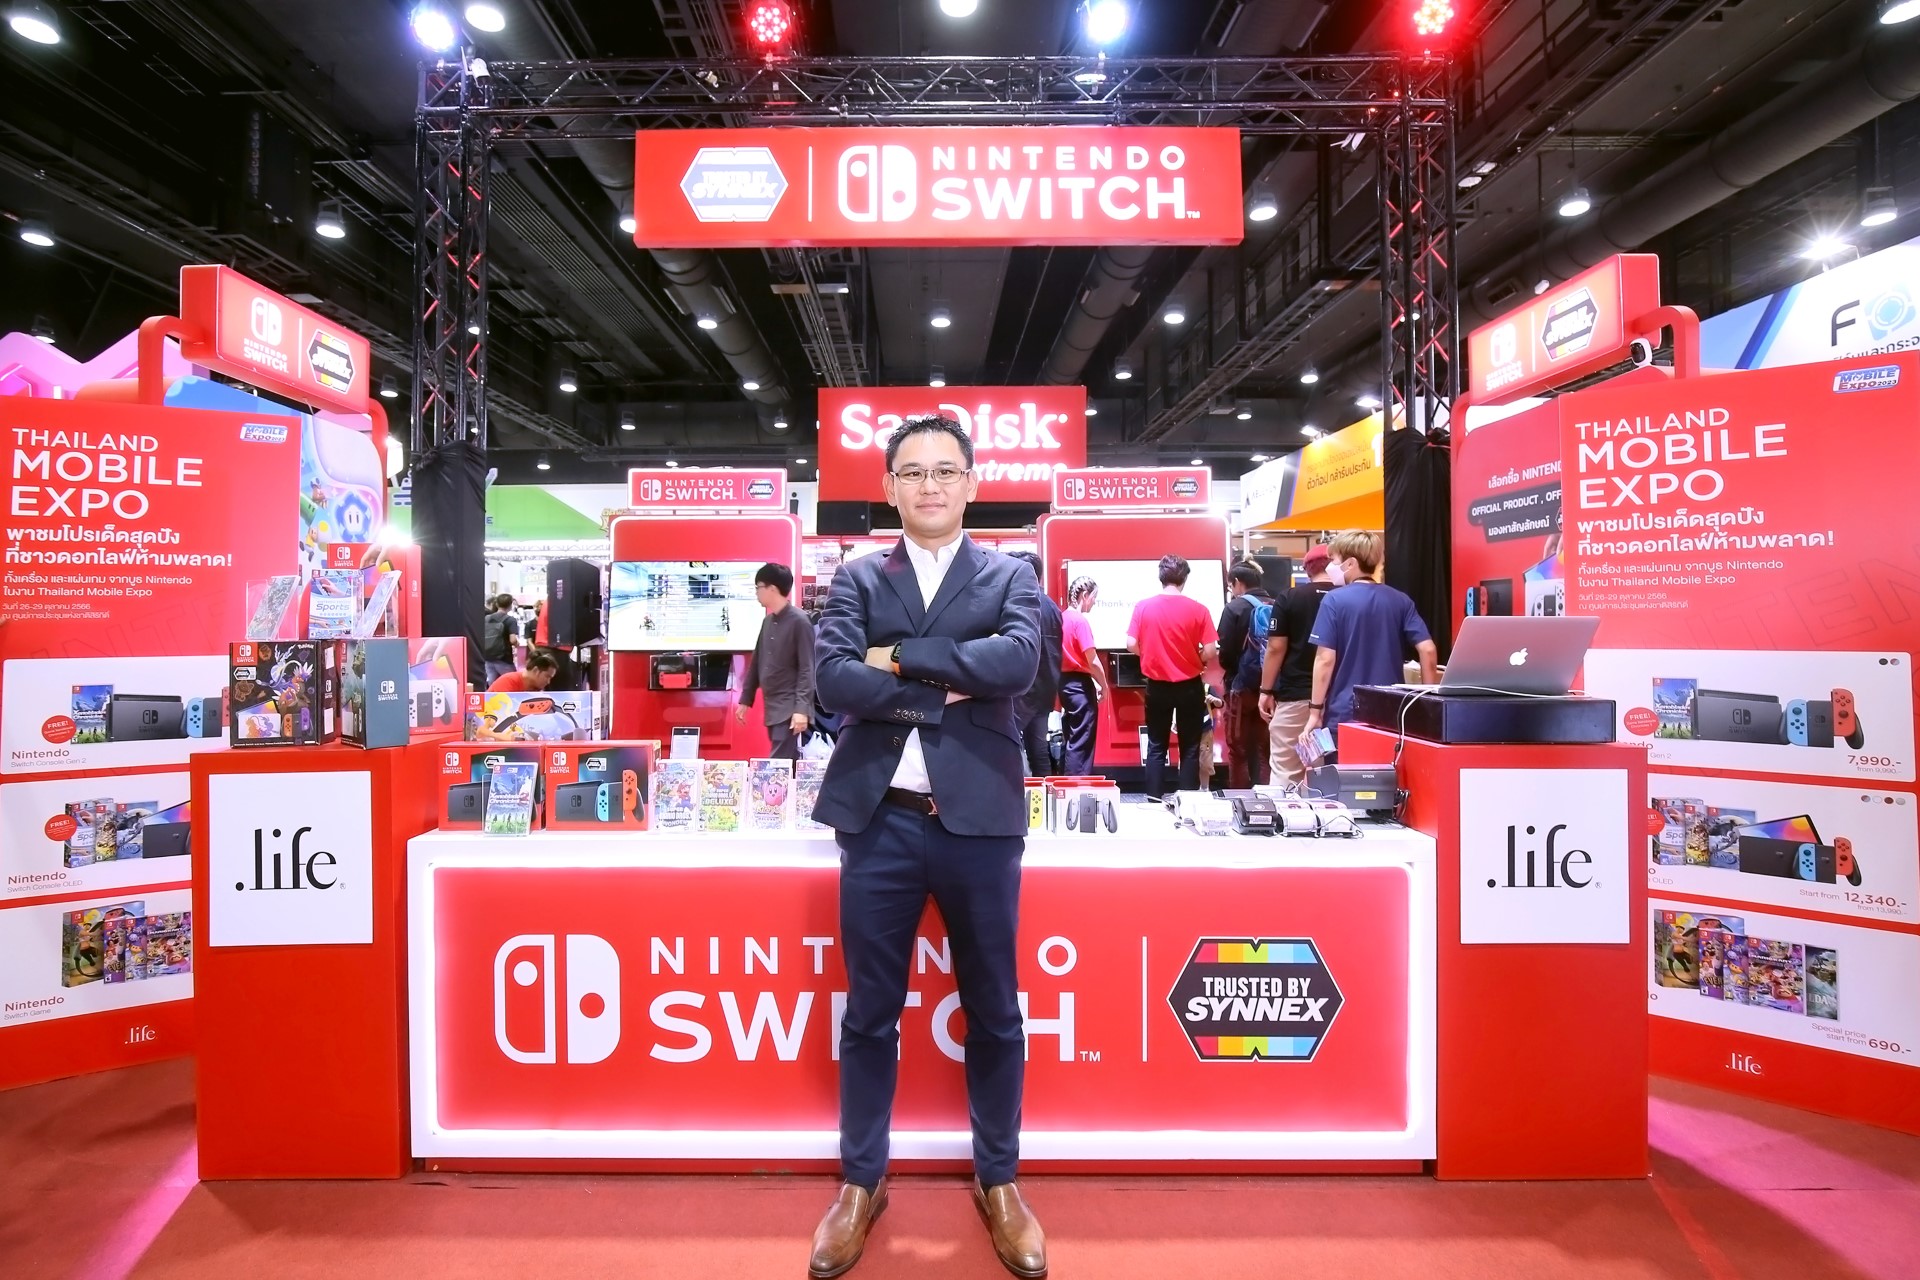 ซินเน็คฯ ลุยต่อเนื่อง นำ Nintendo Switch by Synnex ร่วมงาน "TME2023" มหกรรมมือถือสุดยิ่งใหญ่แห่งปี